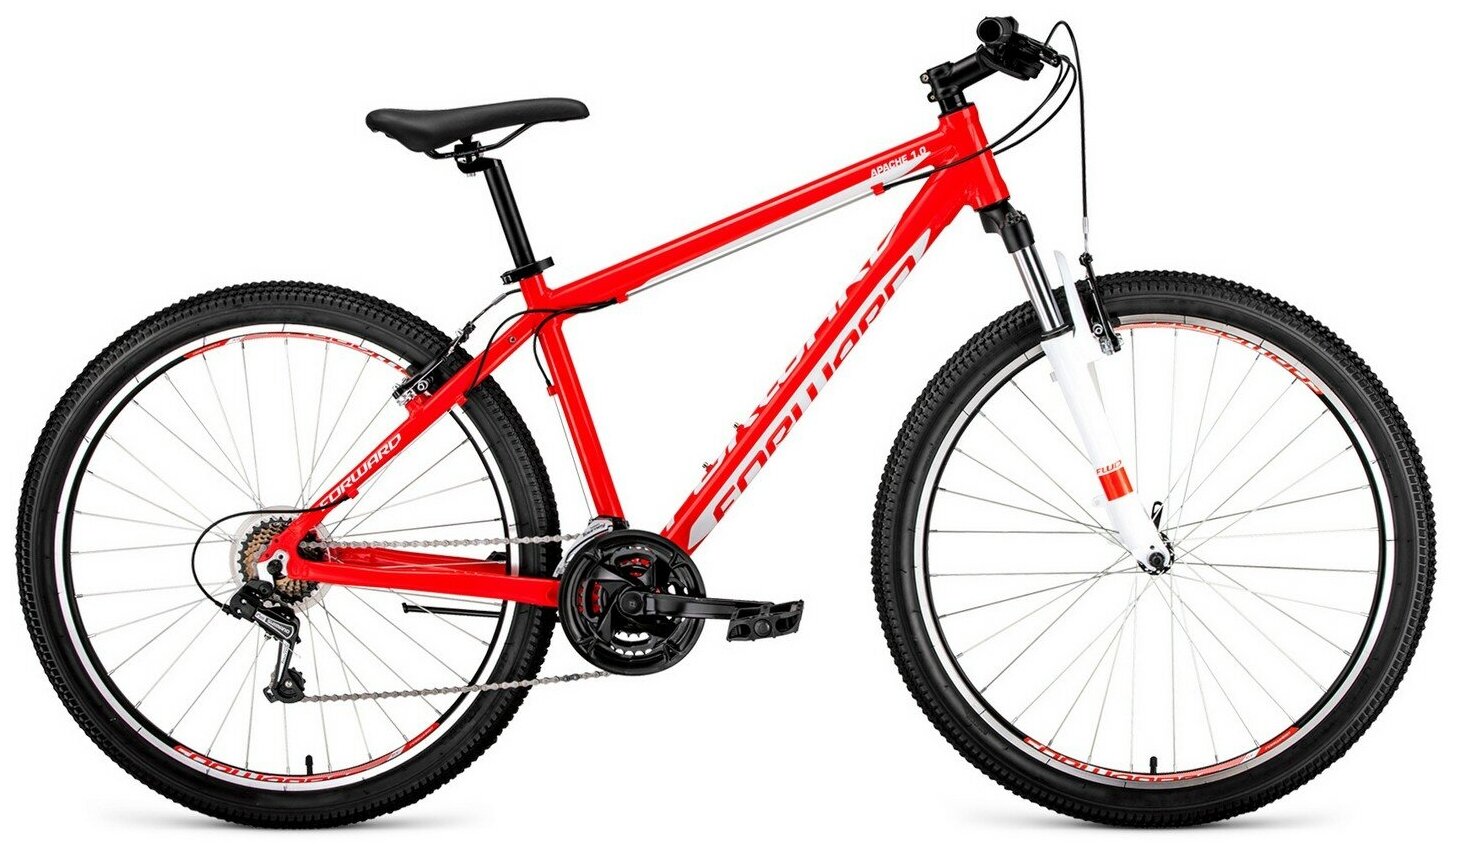 Горный велосипед Forward Apache 27,5 1.0 (2020) 17" Красно-белый (161-178 см)